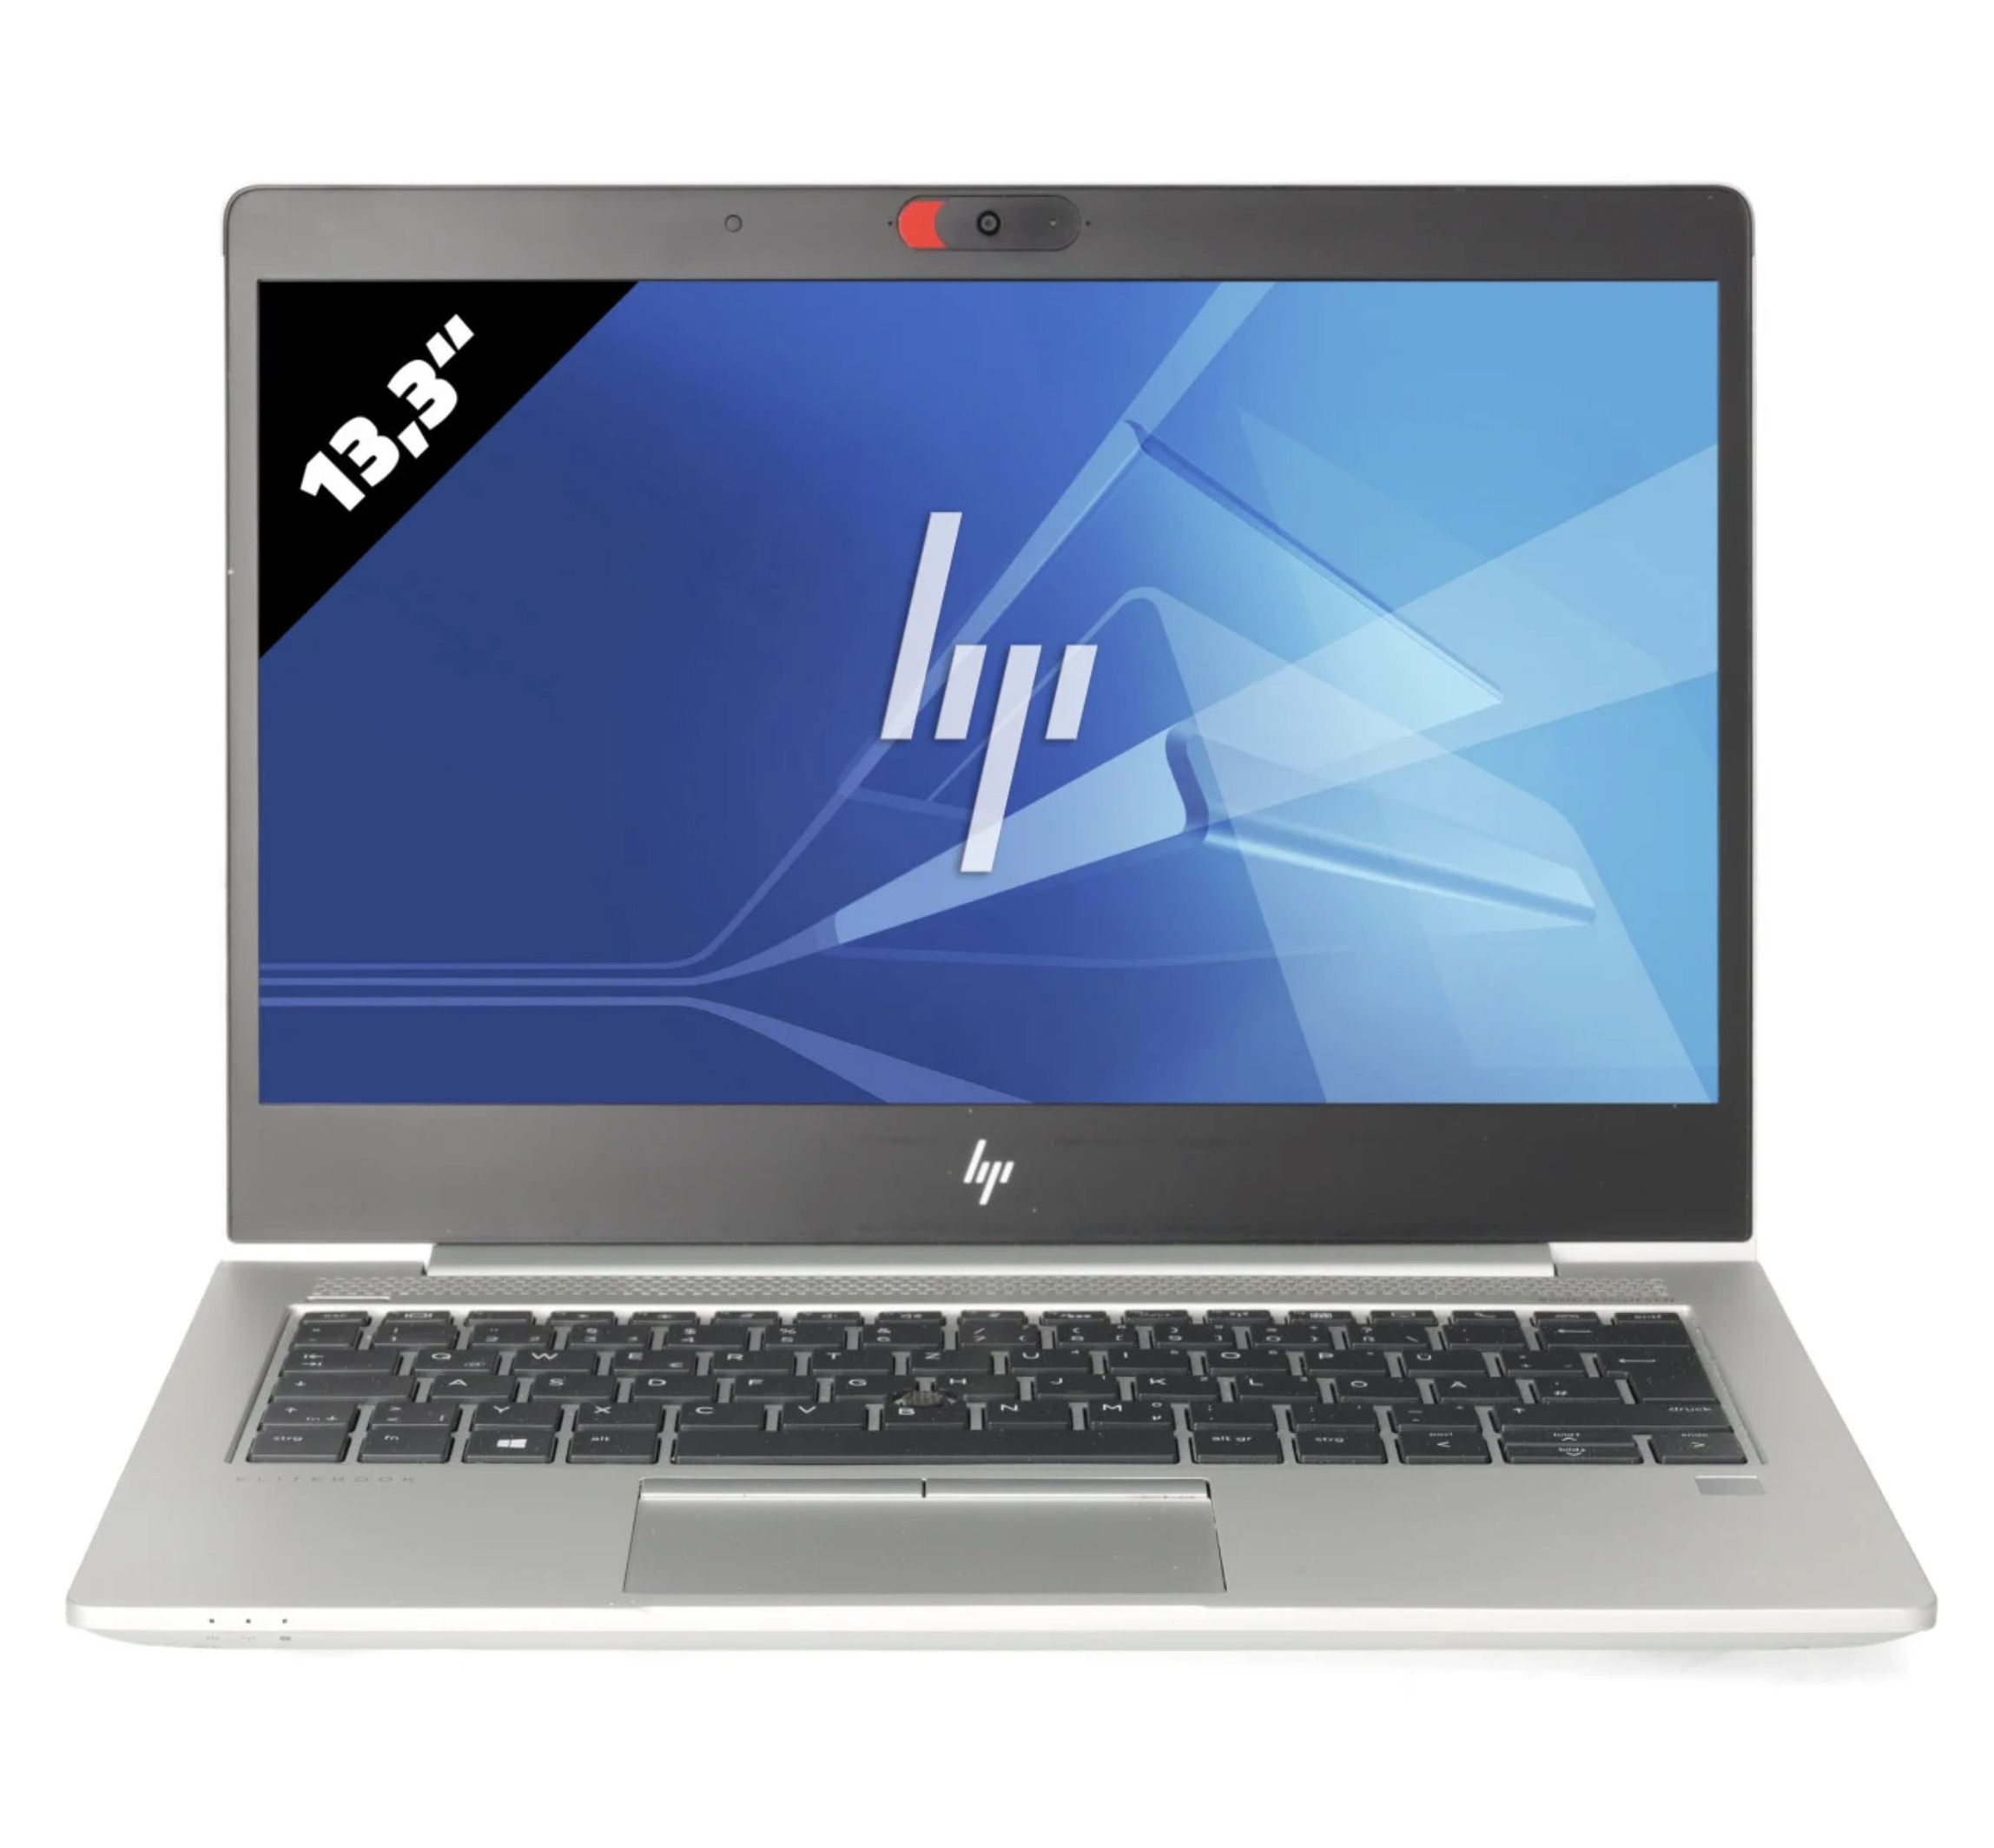 HP EliteBook 830 G6 – 13,3 Zoll Notebook mit 500GB SSD für 199€ (statt 259€) – refurbished